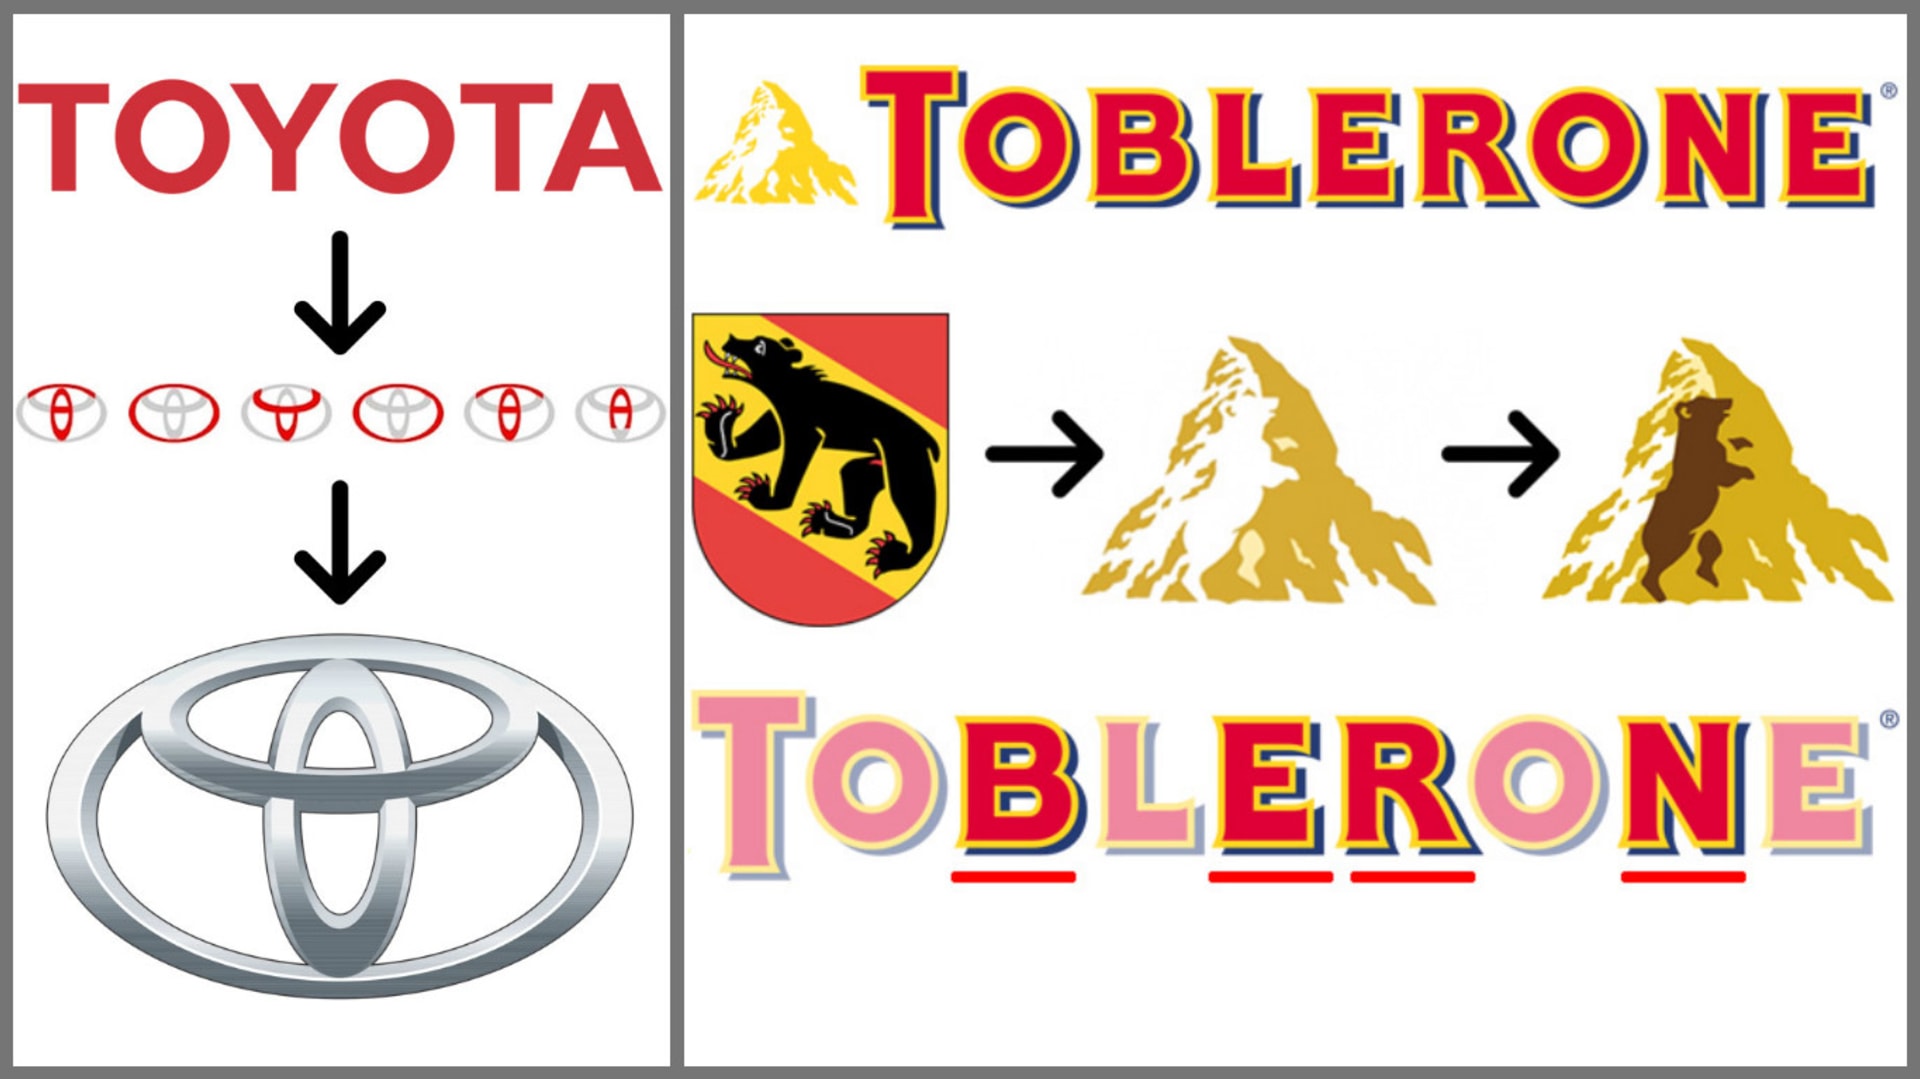 Co v sobě skrývá logo Toyoty nebo Toblerone?